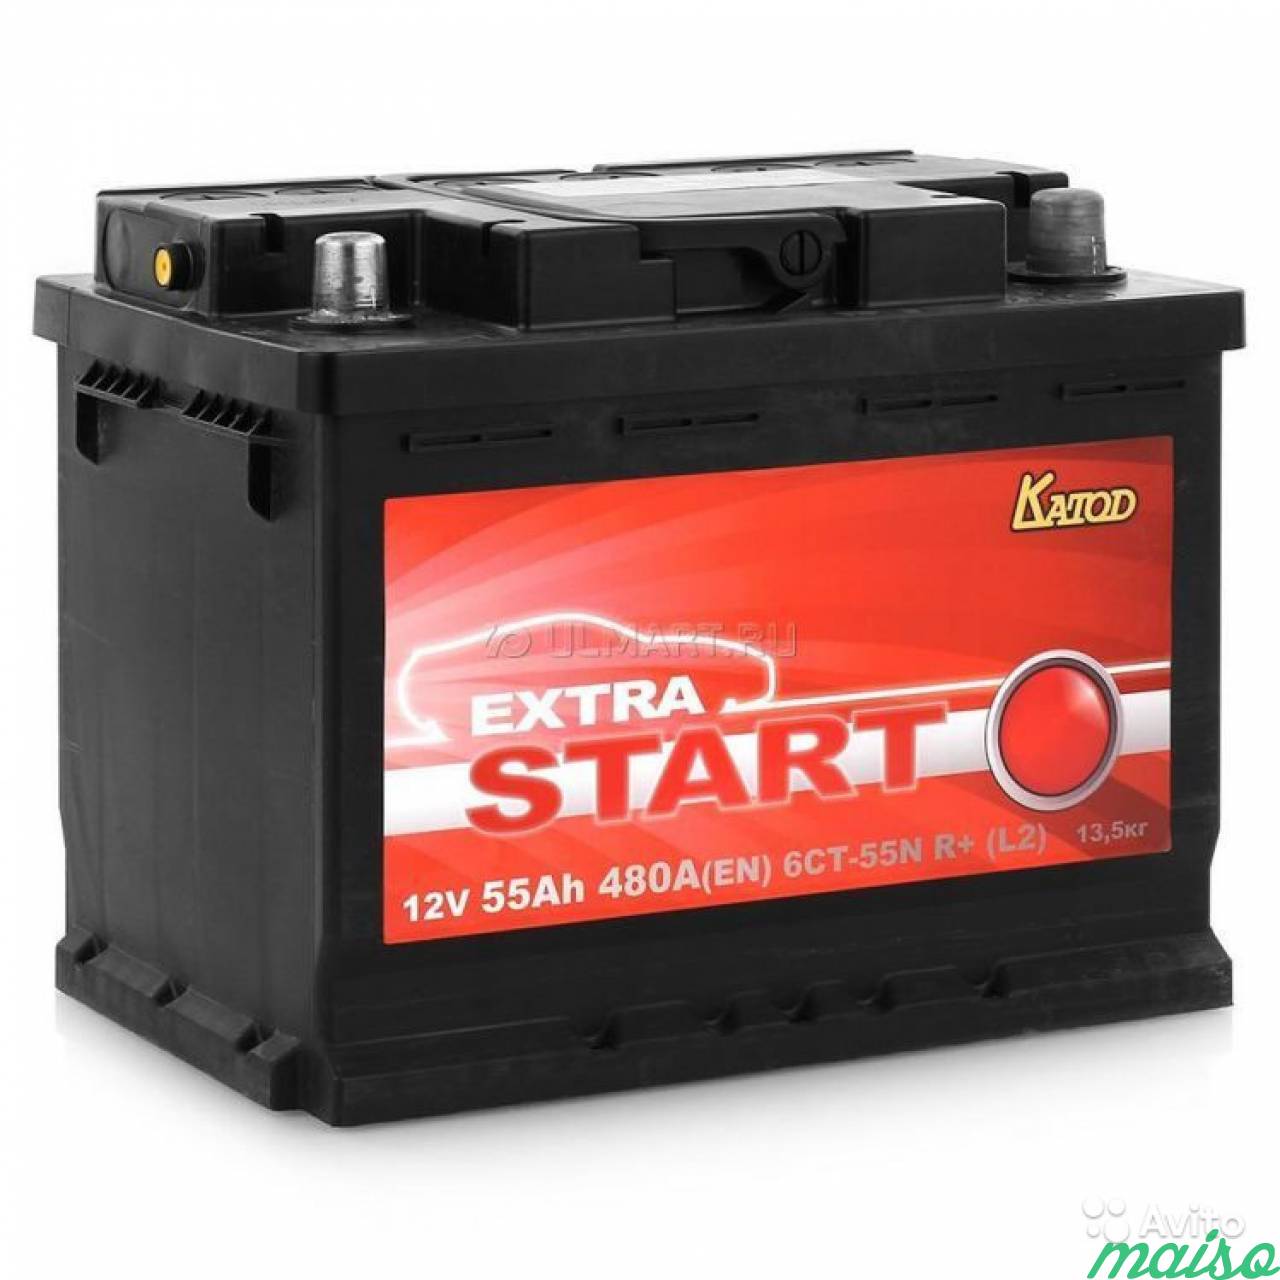 Аккумулятор автомобильный акб. Аккумулятор катод Extra start 6ст-60n l+ (l2). Аккумулятор Extra start 6ст-60n r+. Аккумулятор автомобильный катод Extra start Extra start. Катод Extra start Extra start 62ач 580a.